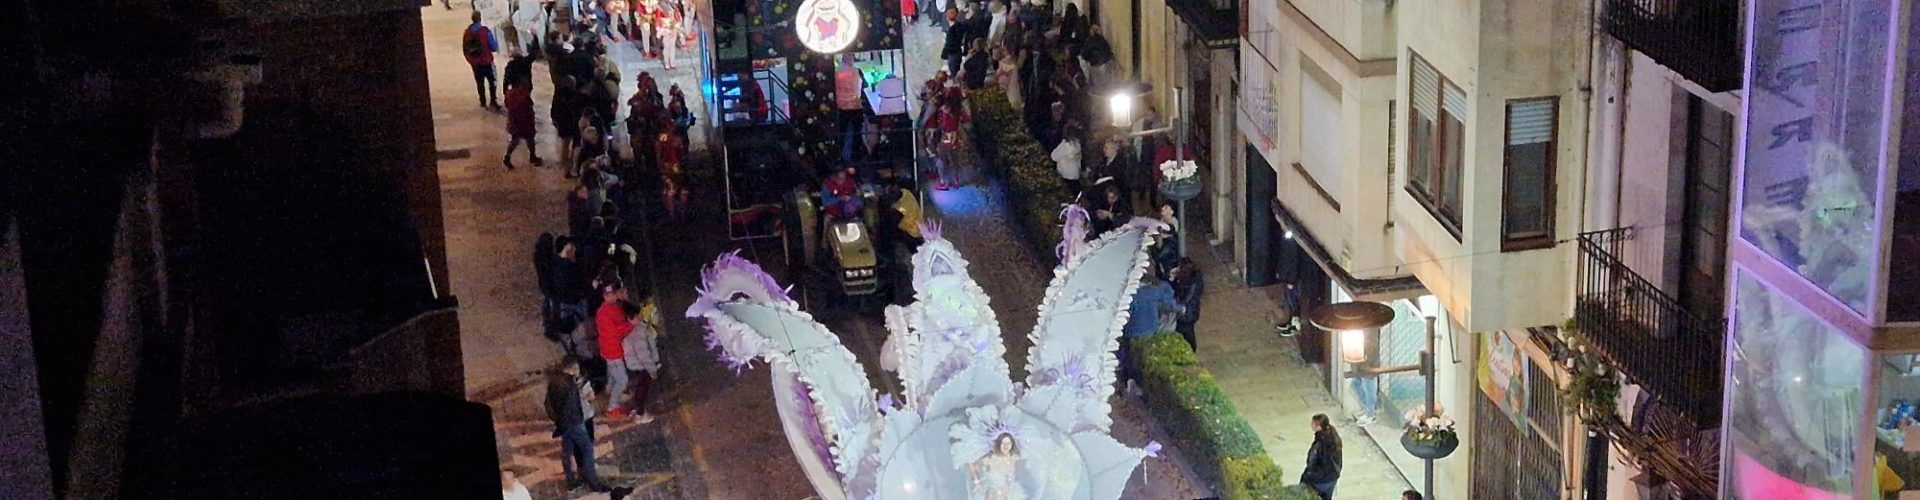 La segona desfilada del Carnaval de Vinaròs, en vídeos